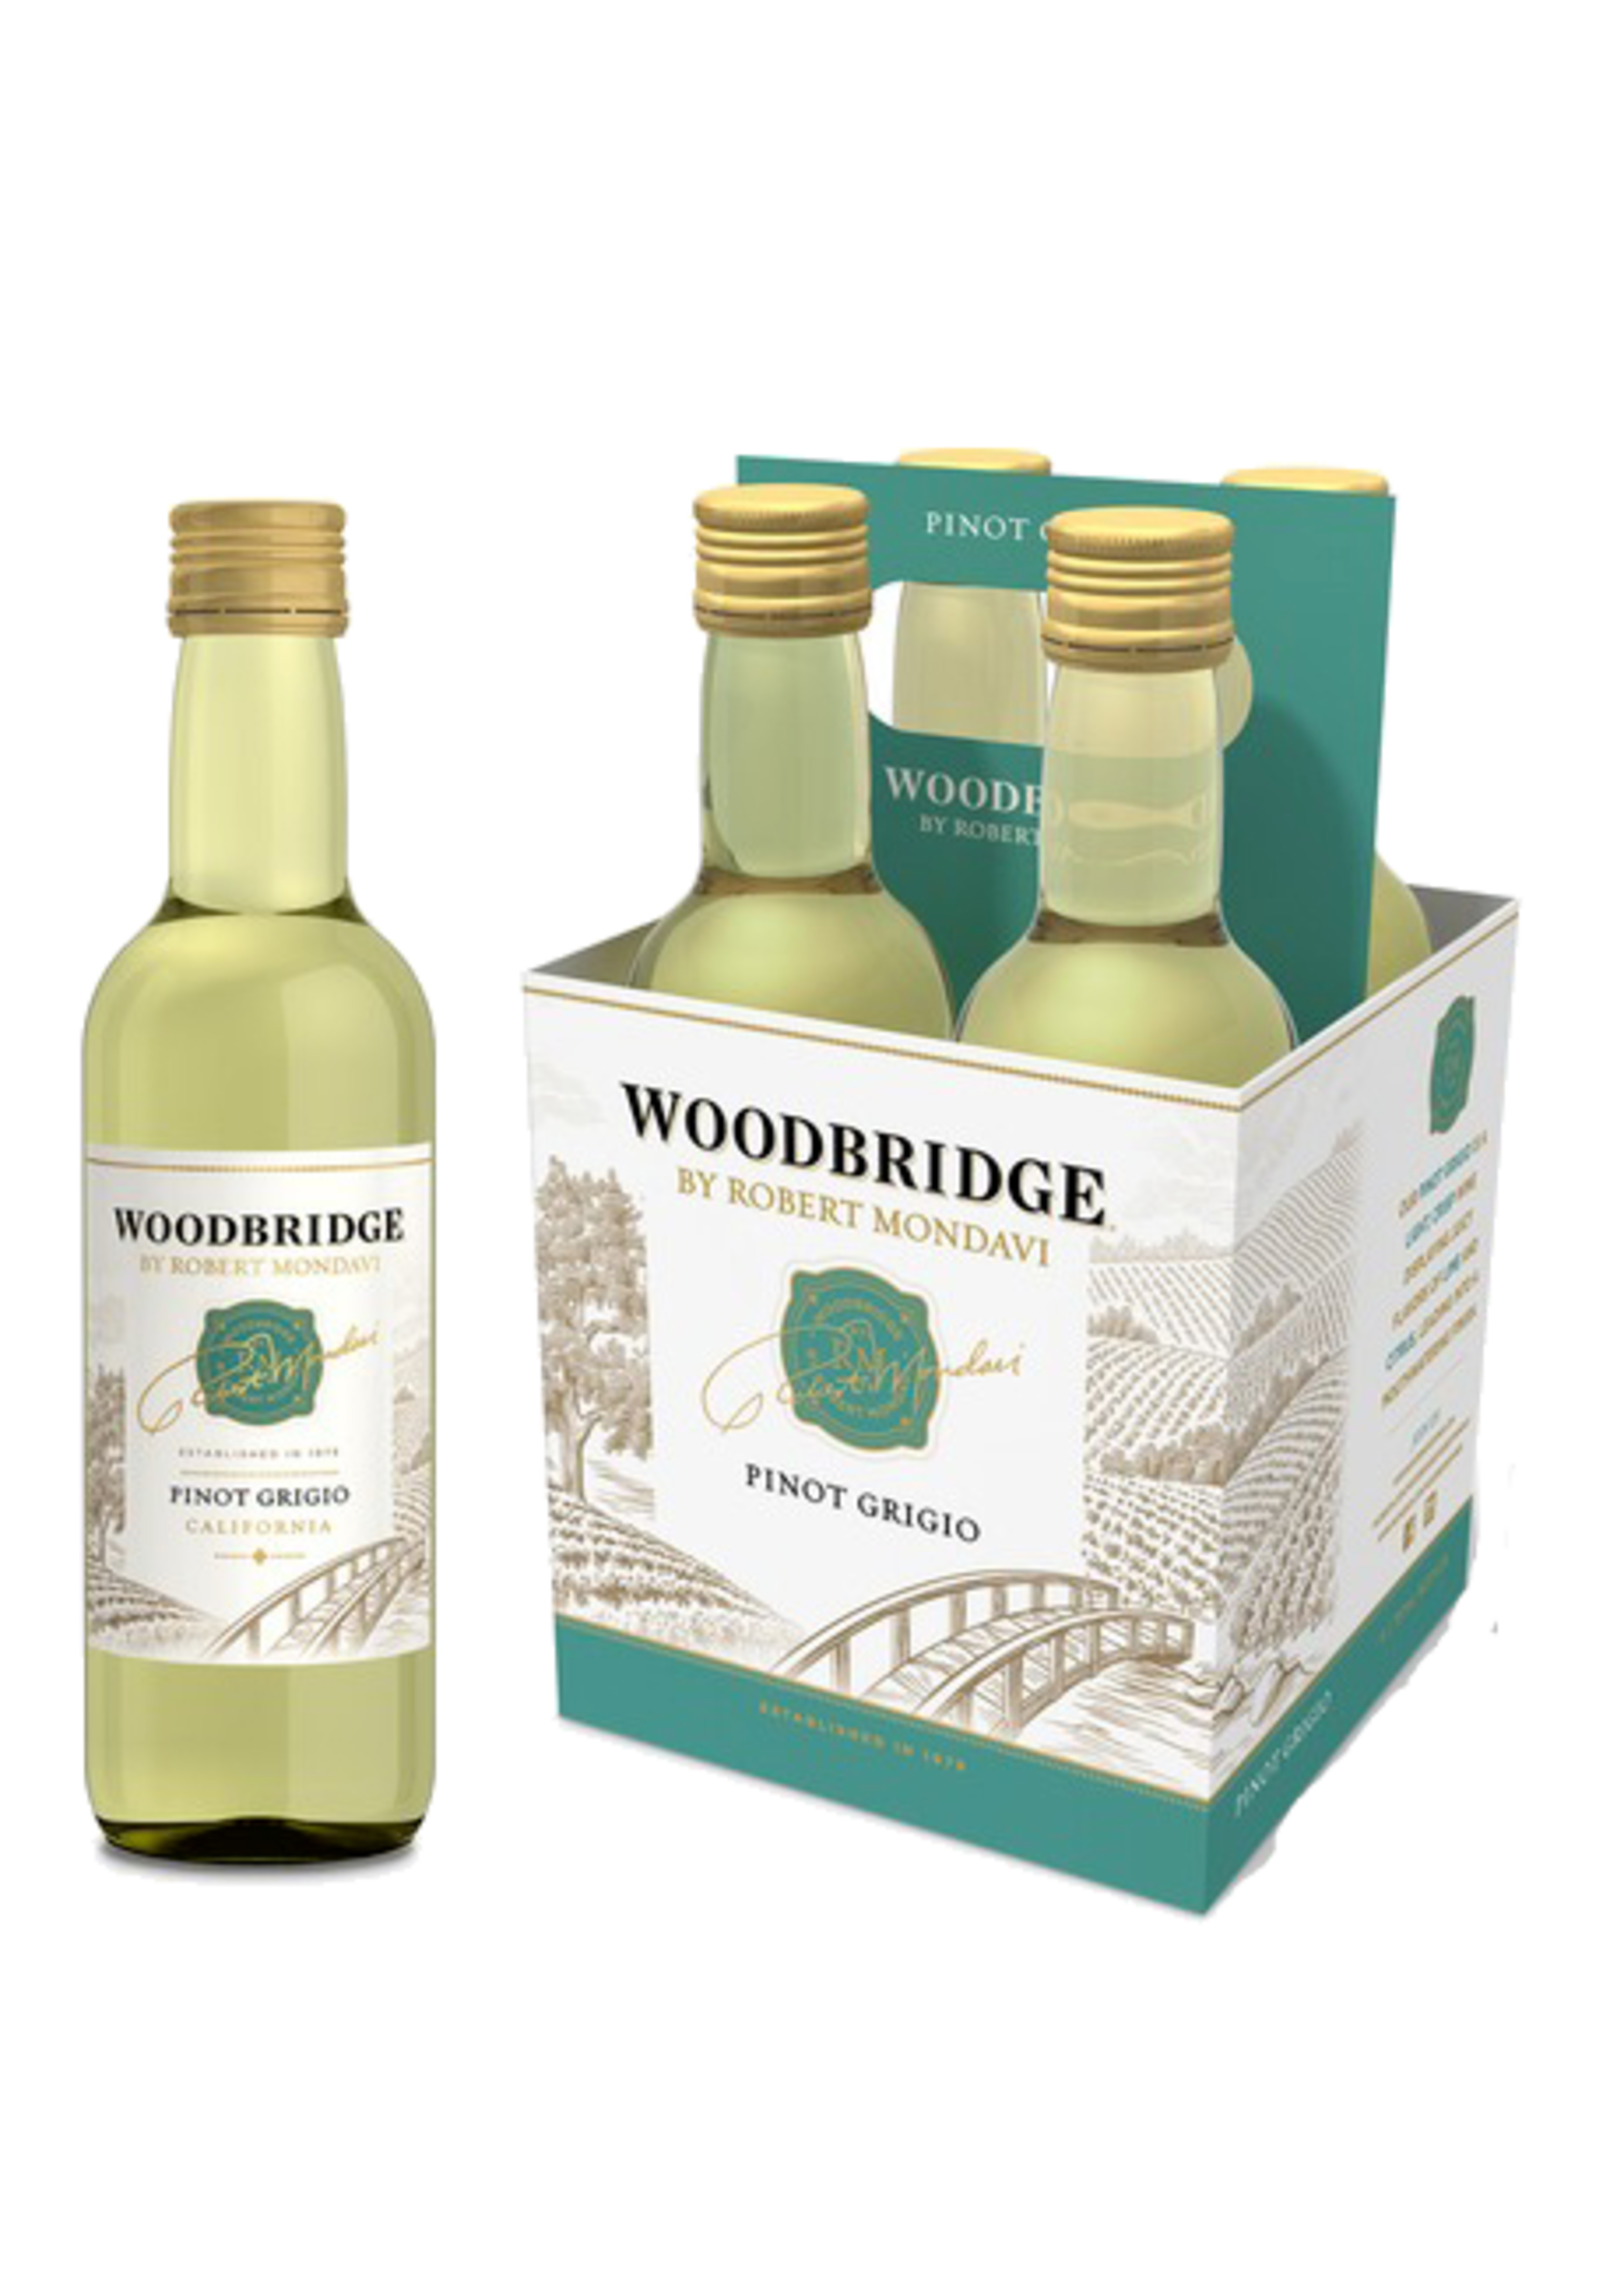 Woodbridge Woodbridge / Pinot Grigio / 187mL